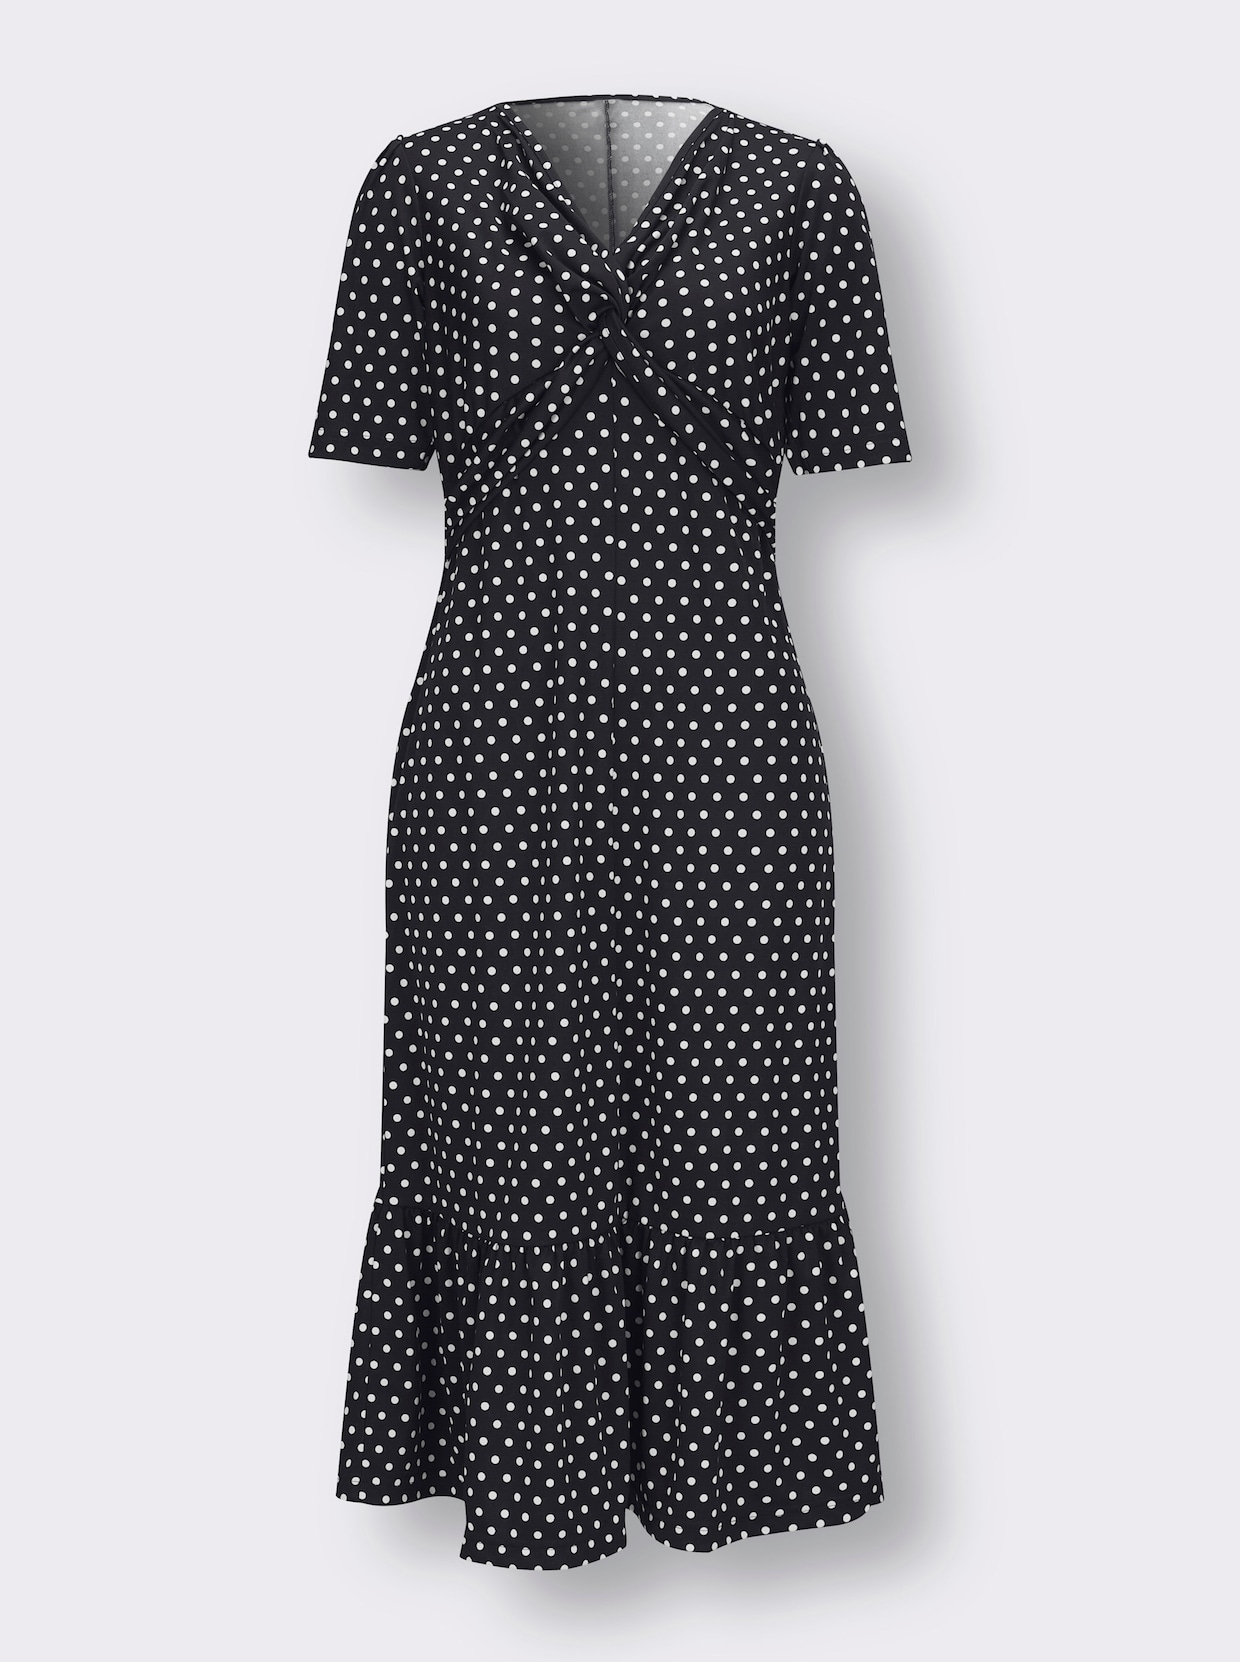 Šaty z úpletu - černá-bílá-puntík